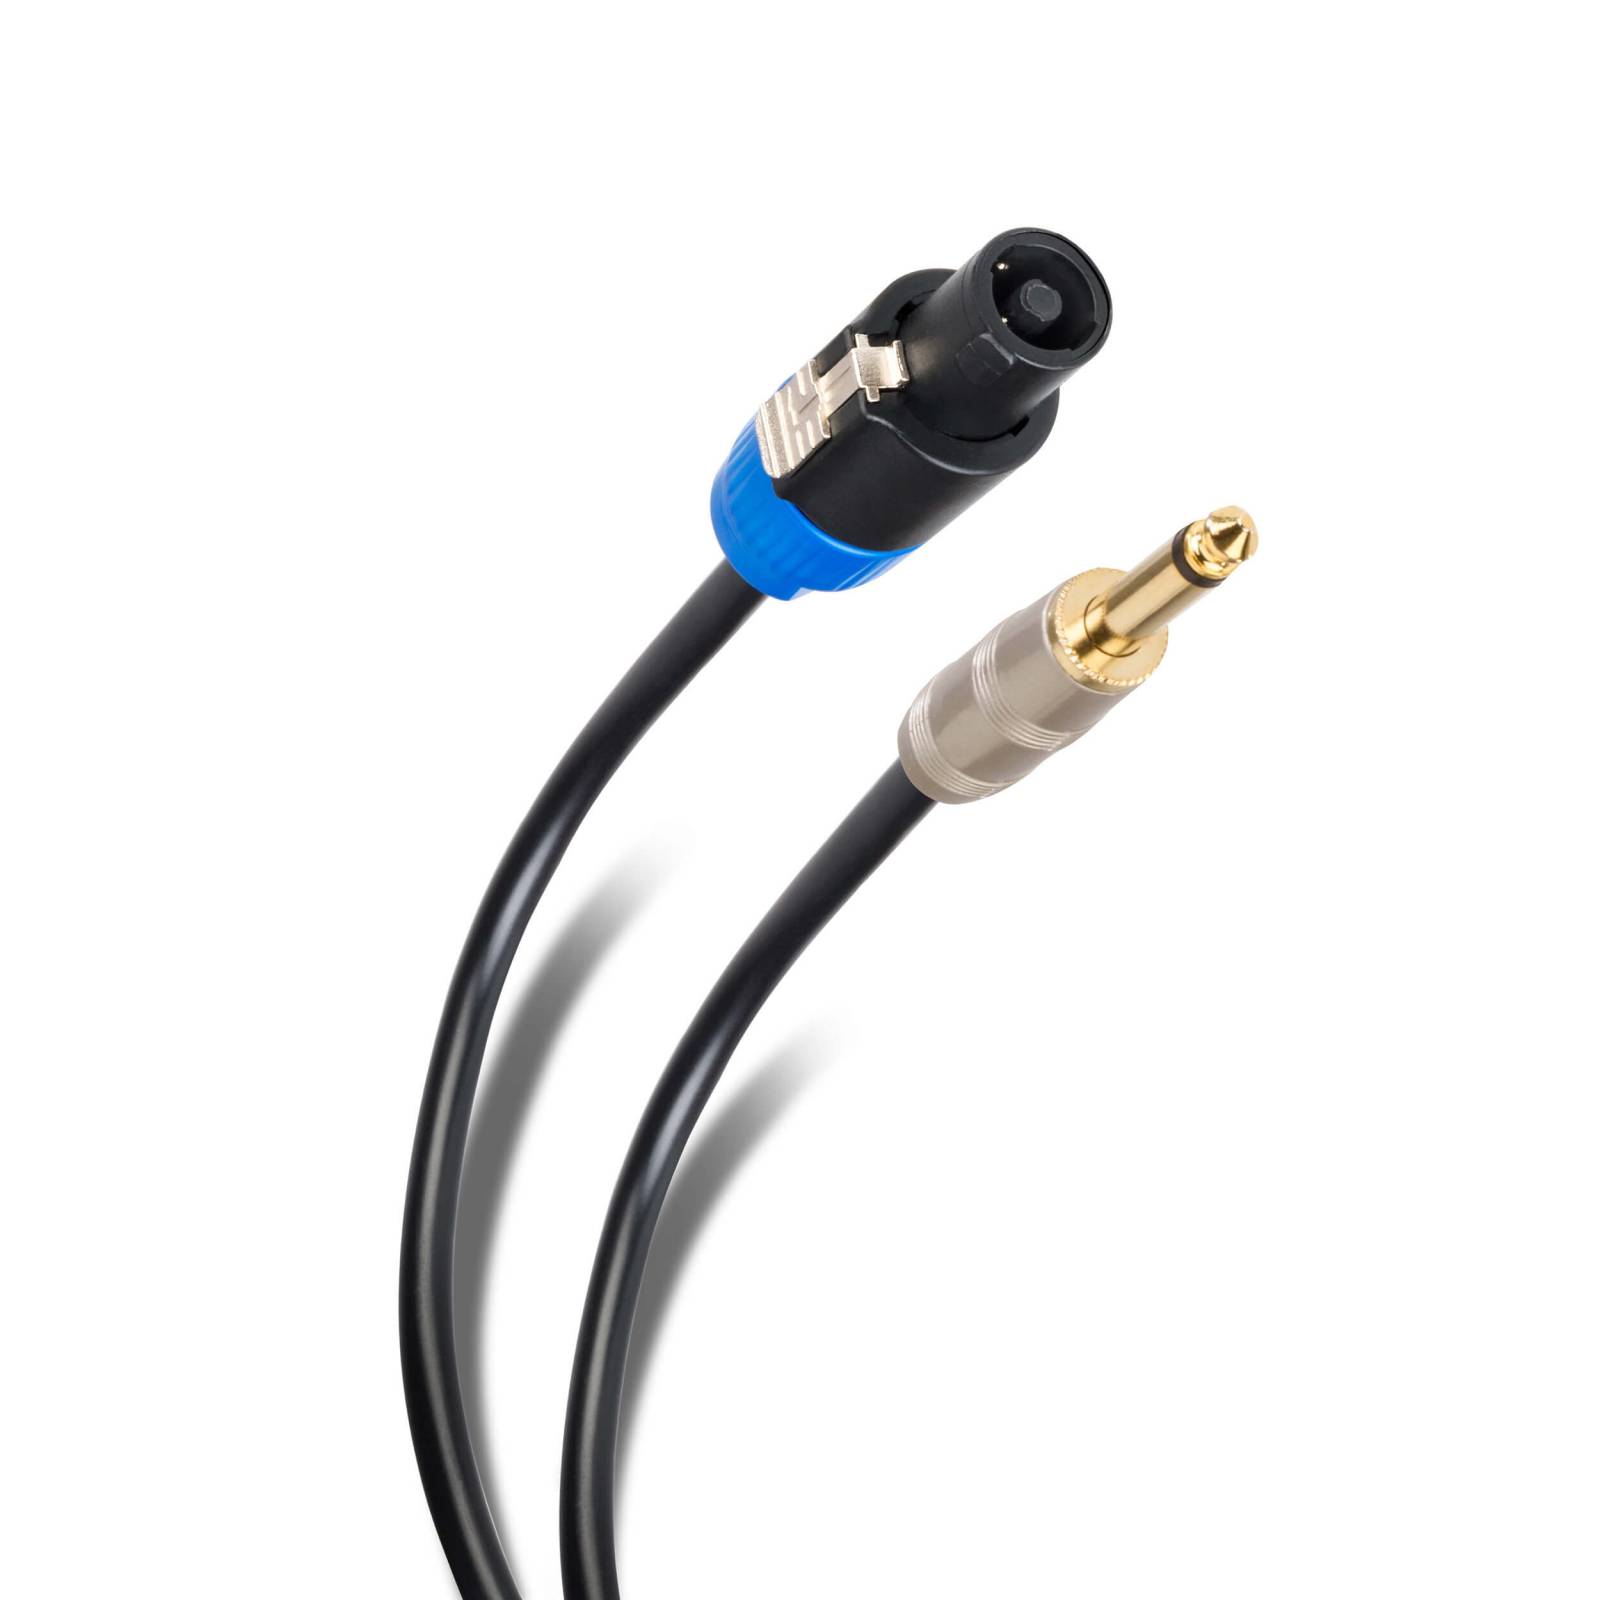 Cable de audio con conector 6.3 mm a Speakon, de 7,2 m